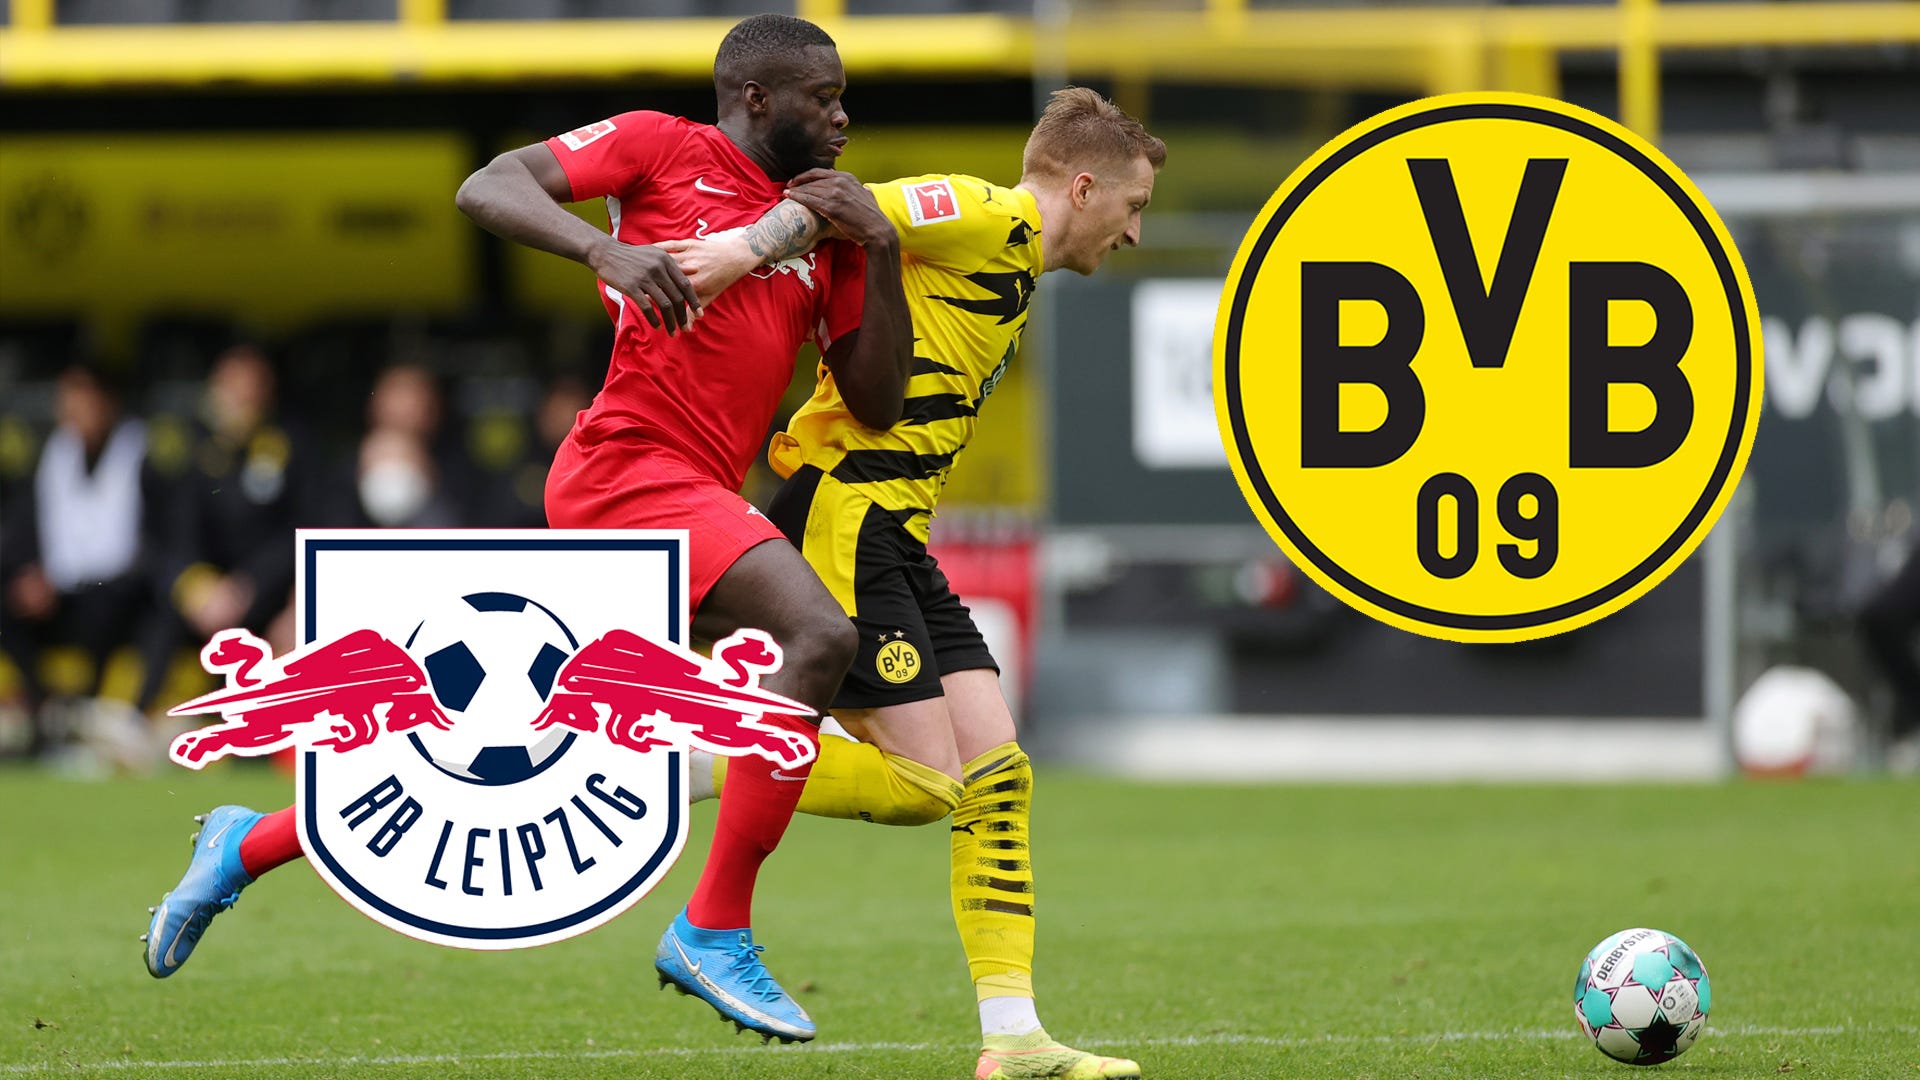 Wer zeigt / überträgt RB Leipzig vs. BVB (Borussia Dortmund) heute live